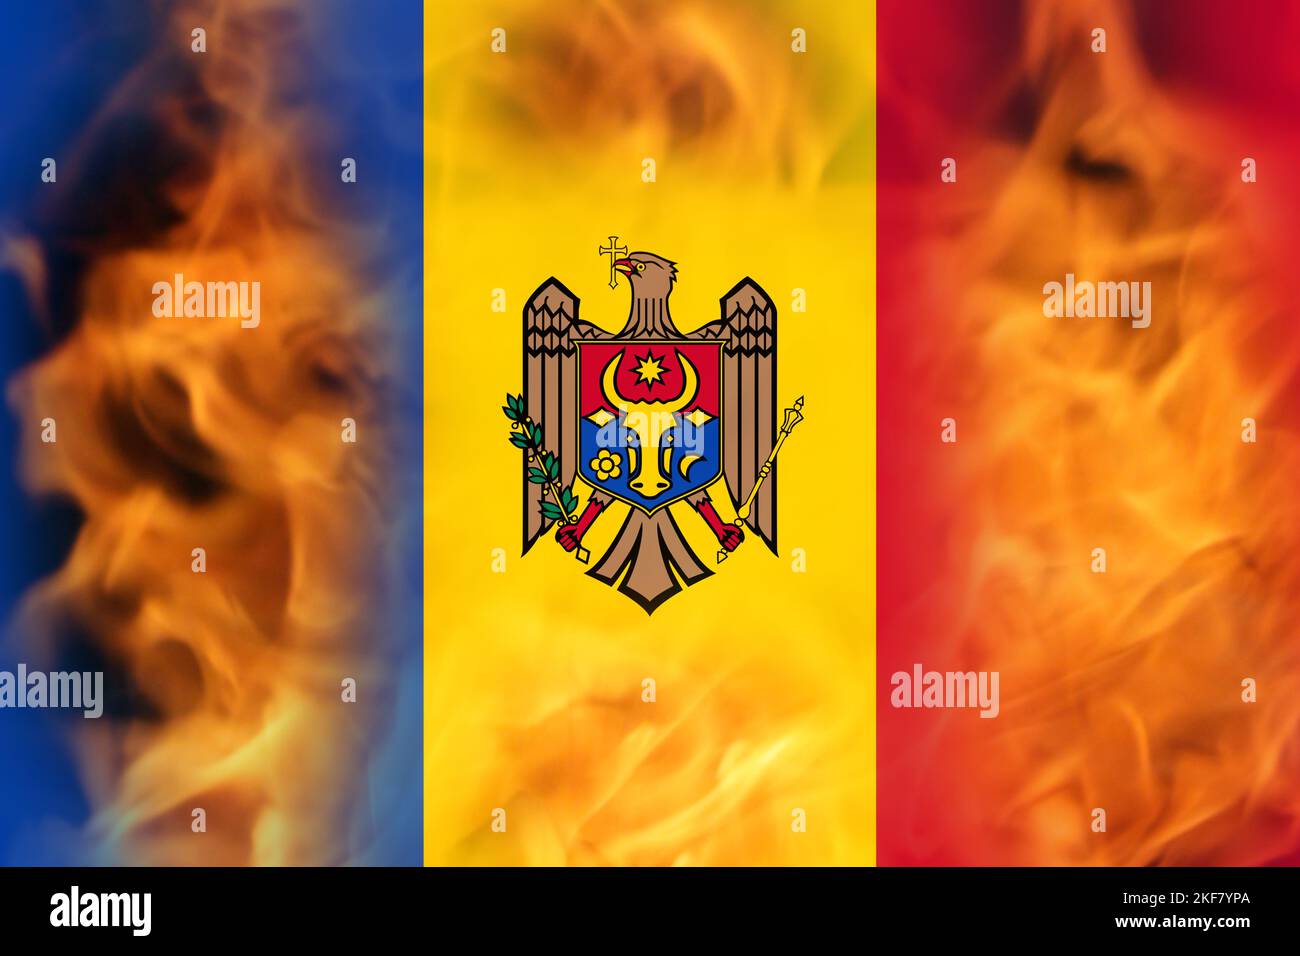 Unschärfe-Proteste in Moldawien. Moldawien Flagge auf Feuer Flamme Hintergrund gemalt. Kraft, Macht, Protestkonzept. Russland-Krieg. Weltkrise. Nicht fokussiert Stockfoto